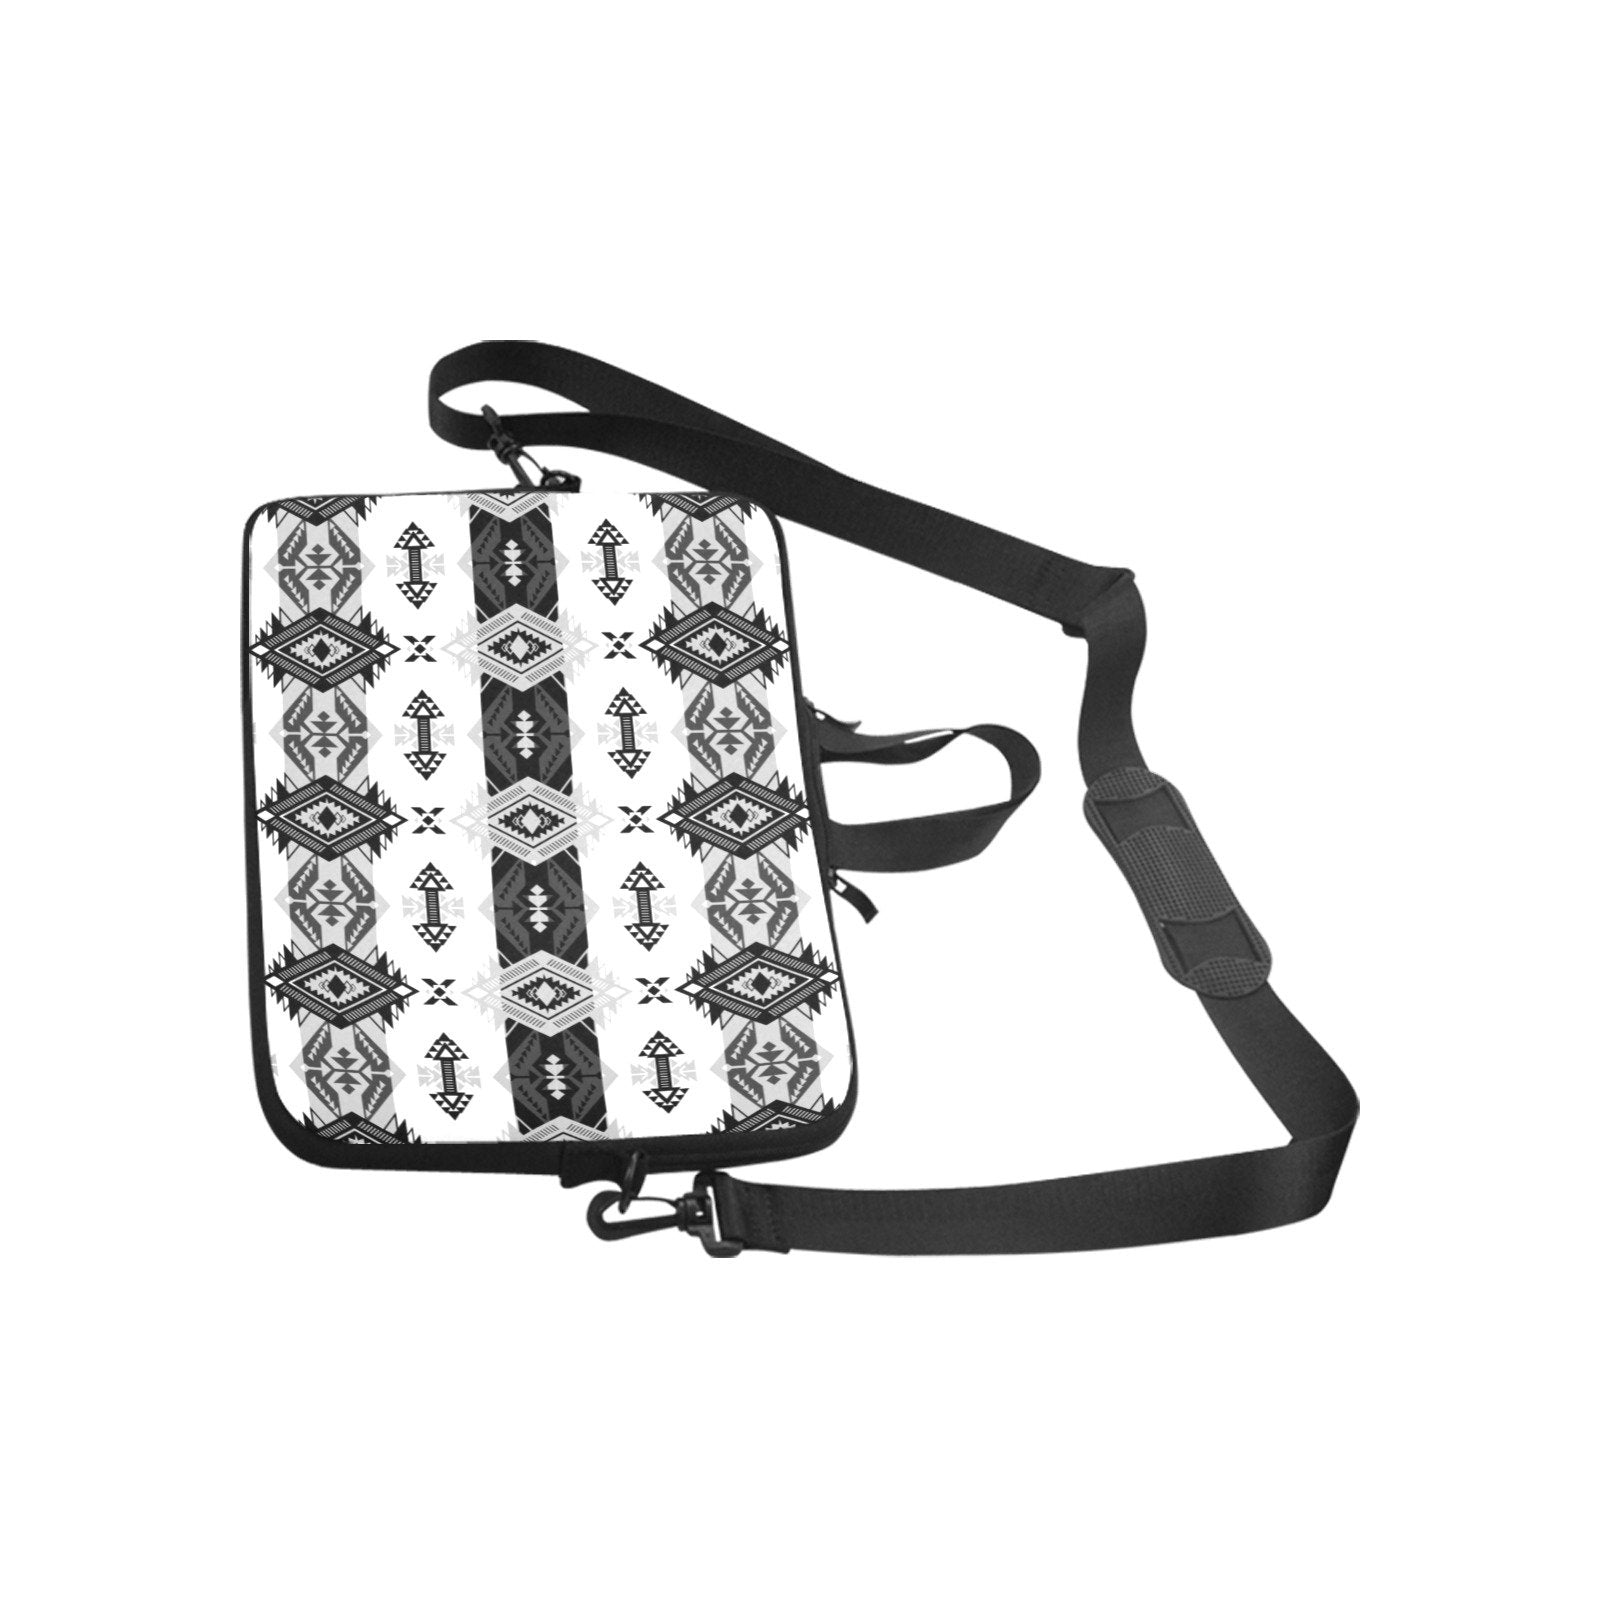 Sovereign Nation Black and White Laptop Handbags 10" bag e-joyer 